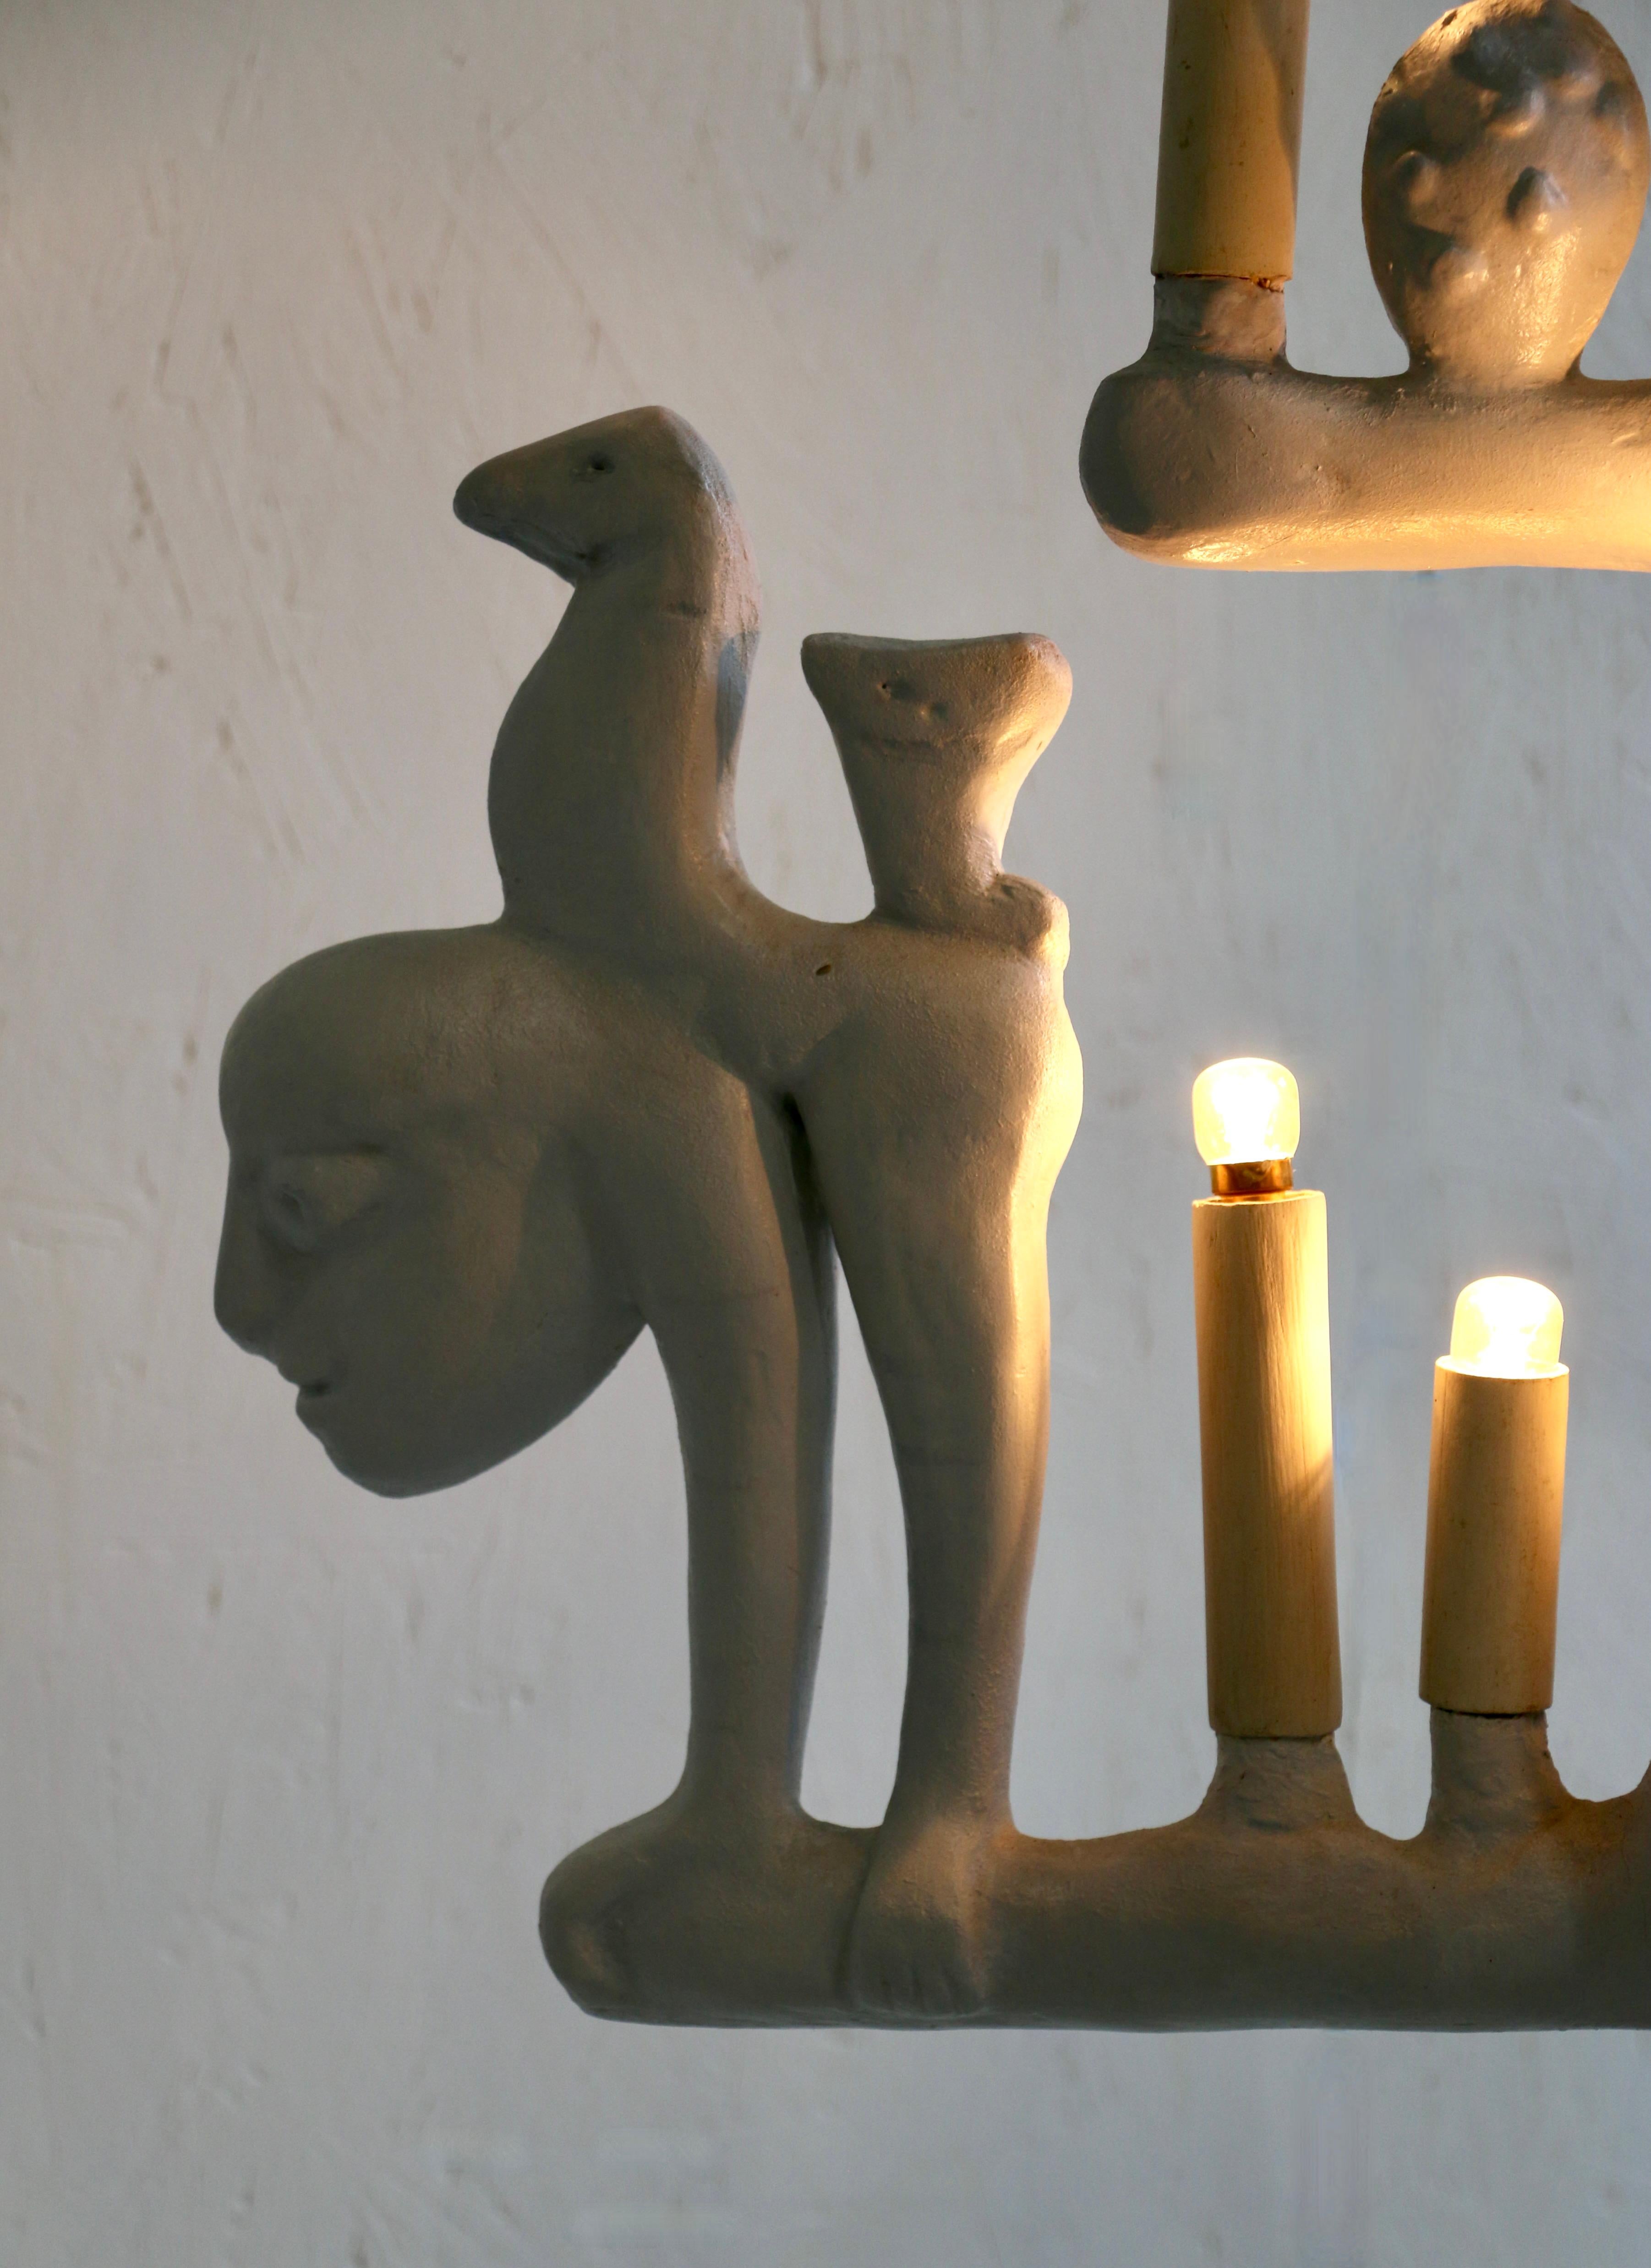 Sorprendente lámpara de resina de 6 brazos con el espíritu de Victor Brauner (1903-1966). Cada brazo está compuesto por figuras quiméricas. Francia, años 50. 